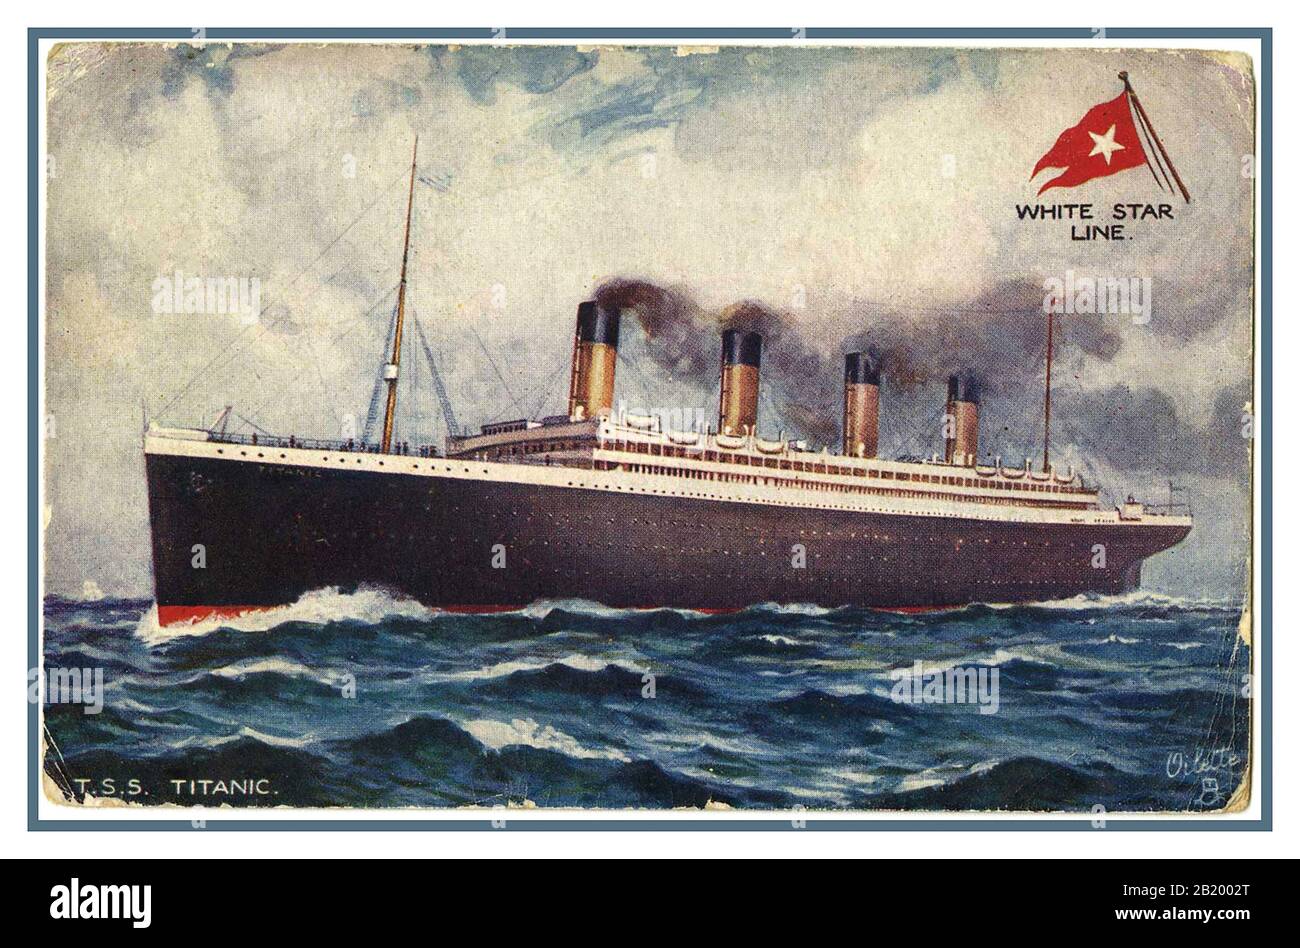 TITANIC 1912 ILLUSTRATION Vintage 1912 Titanic Promotional couleur carte postale de La ligne White Star avant son tragique naufrage Banque D'Images